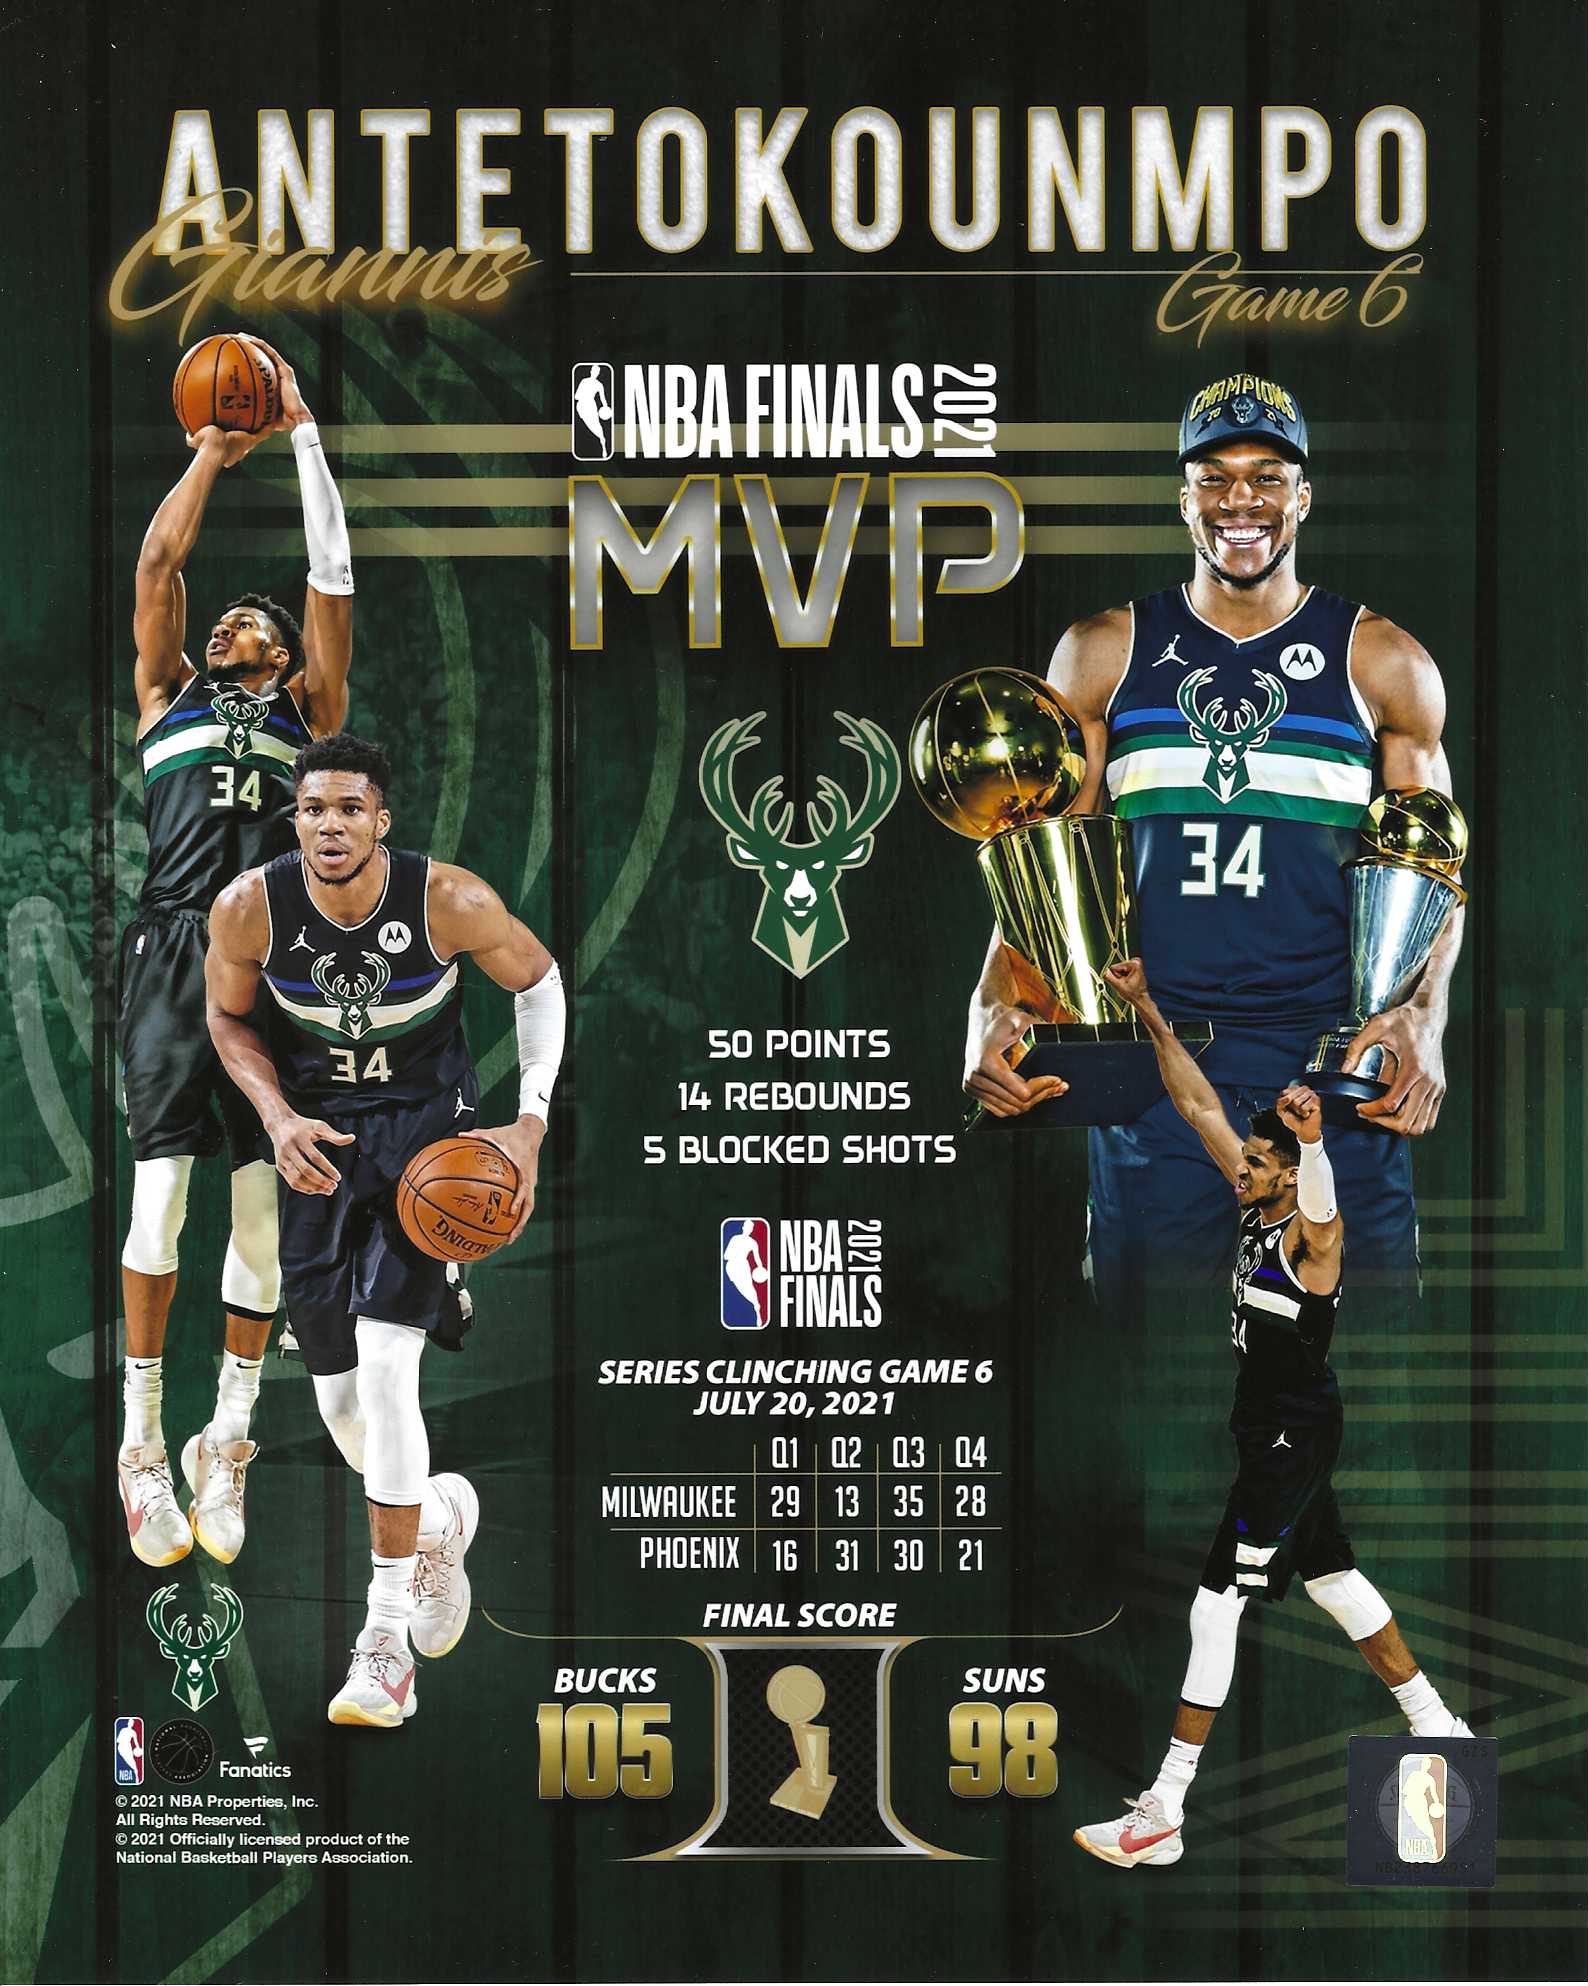 NBA Milwaukee Bucks - Giannis Antetokounmpo 21 Poster